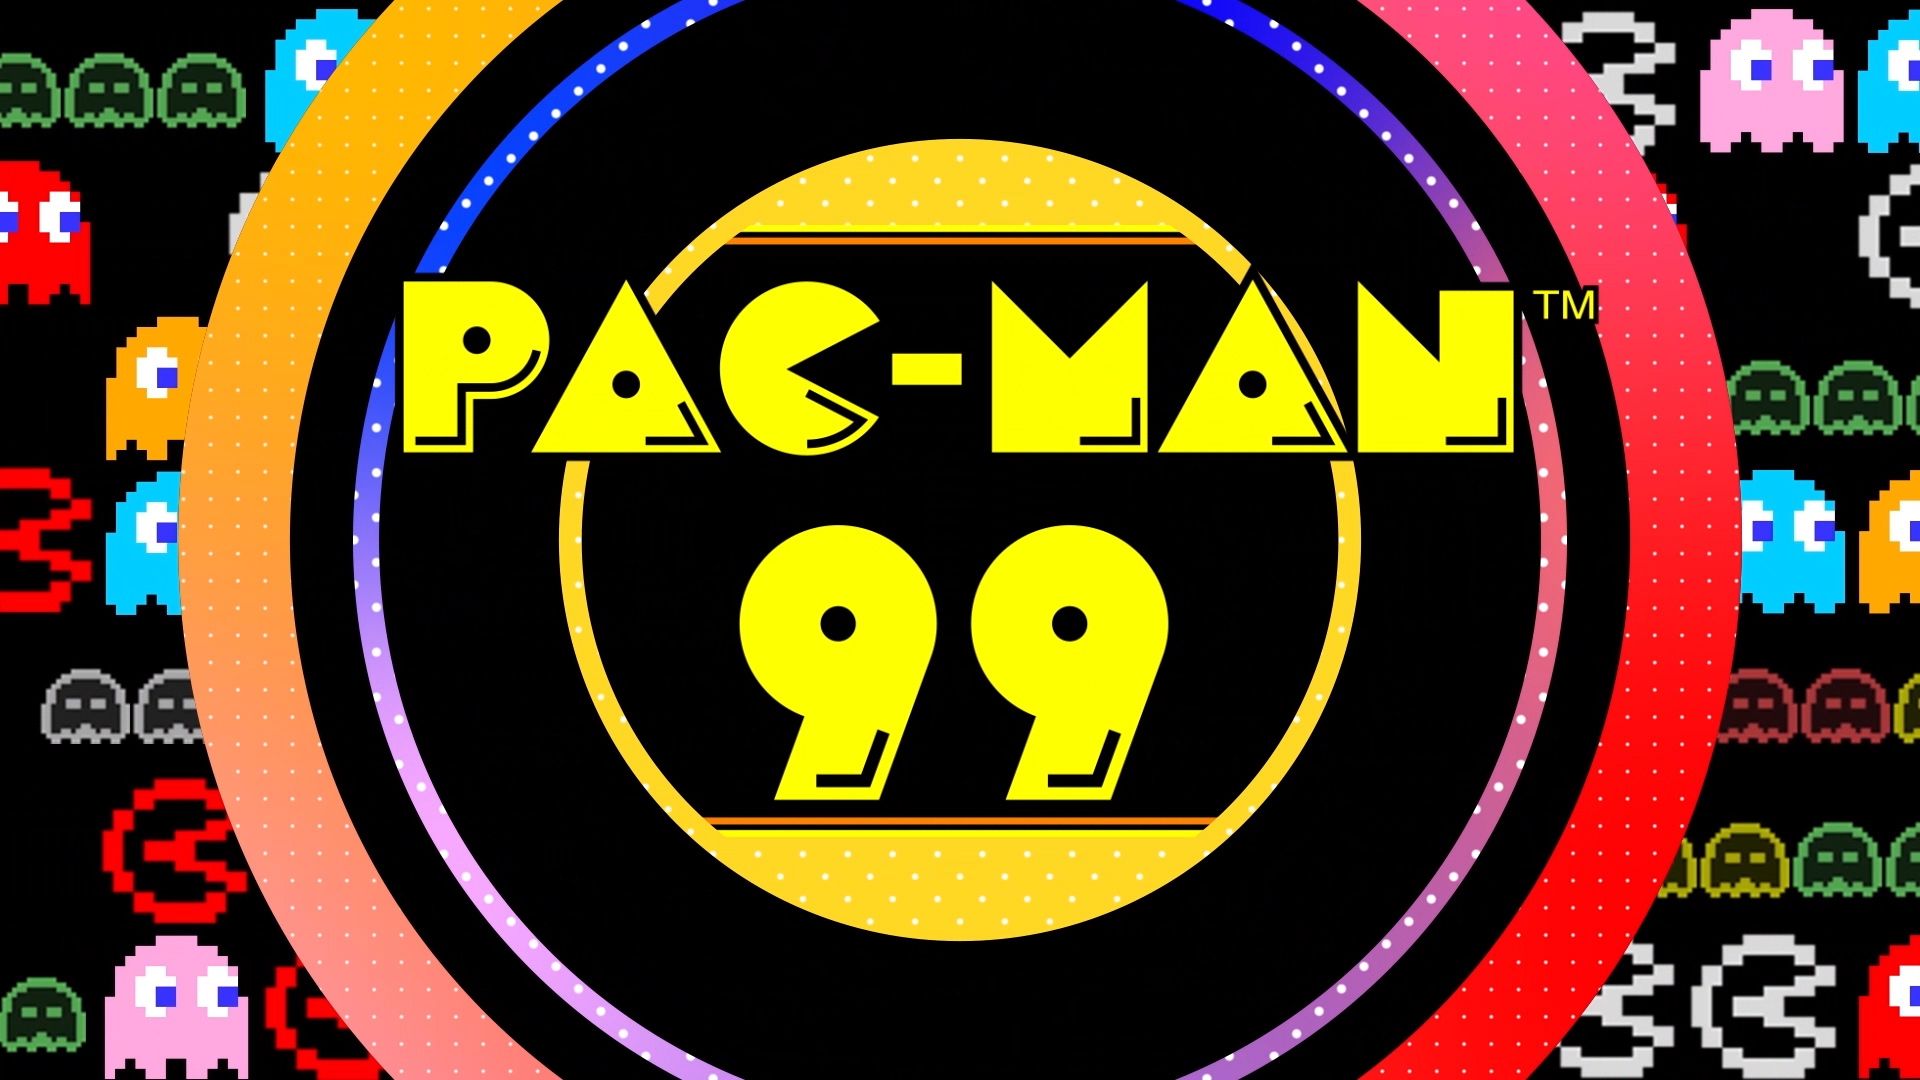 Nintendo kündigt das Ende des Supports für Pac-Man 99 an - das Spiel wird auch aus dem Store entfernt